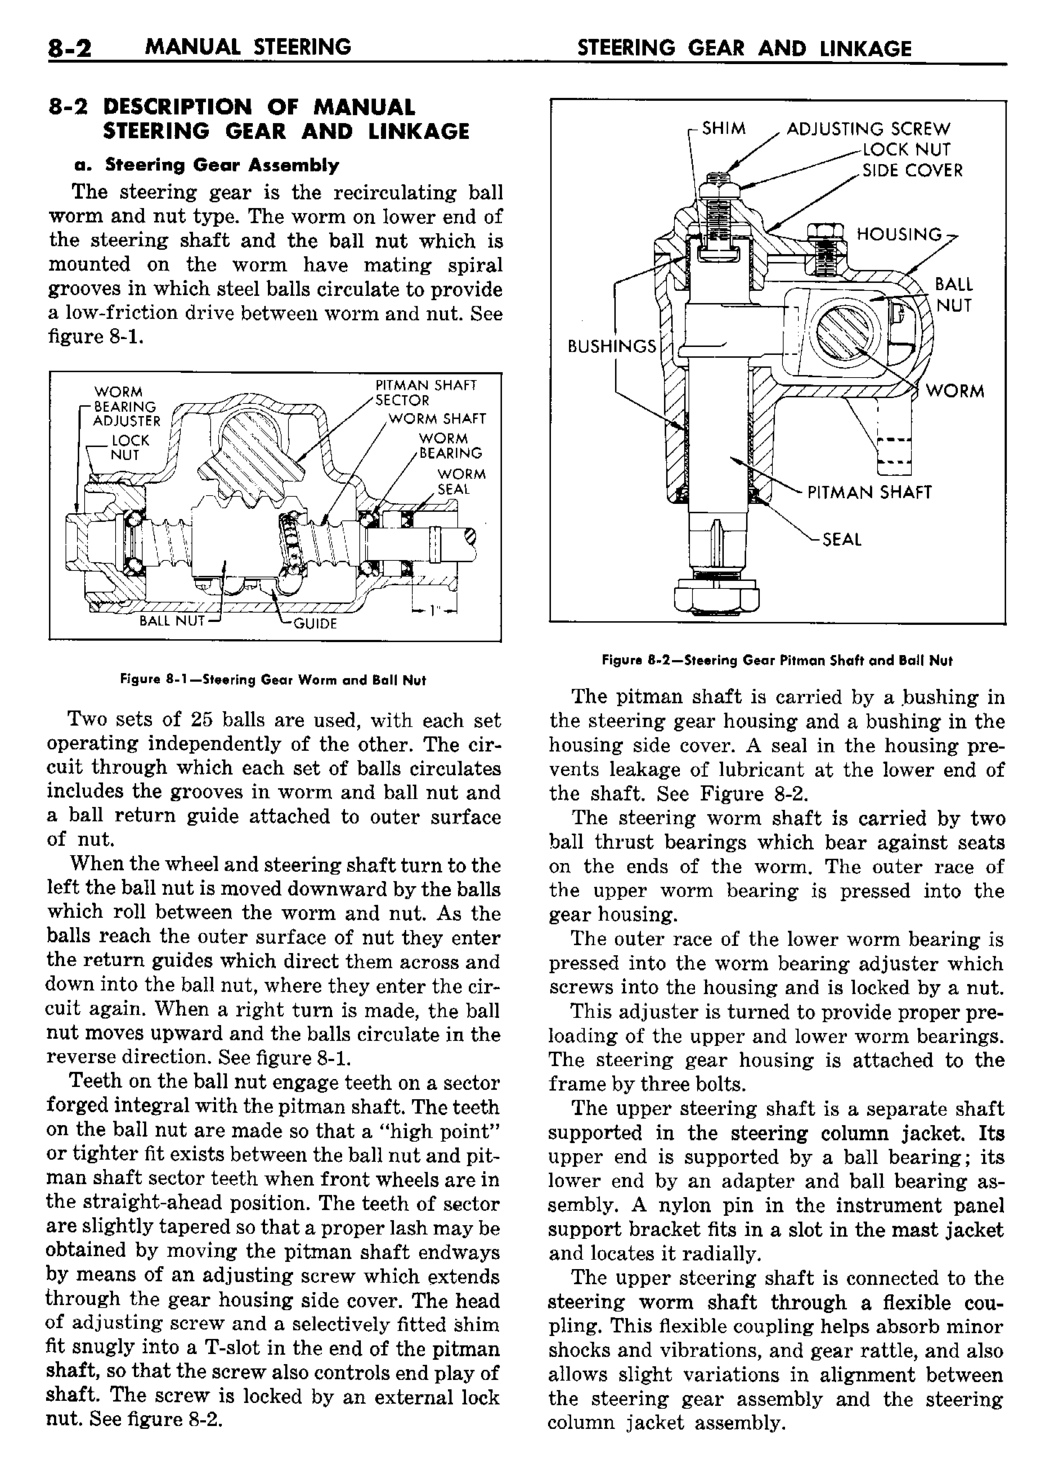 n_09 1960 Buick Shop Manual - Steering-002-002.jpg